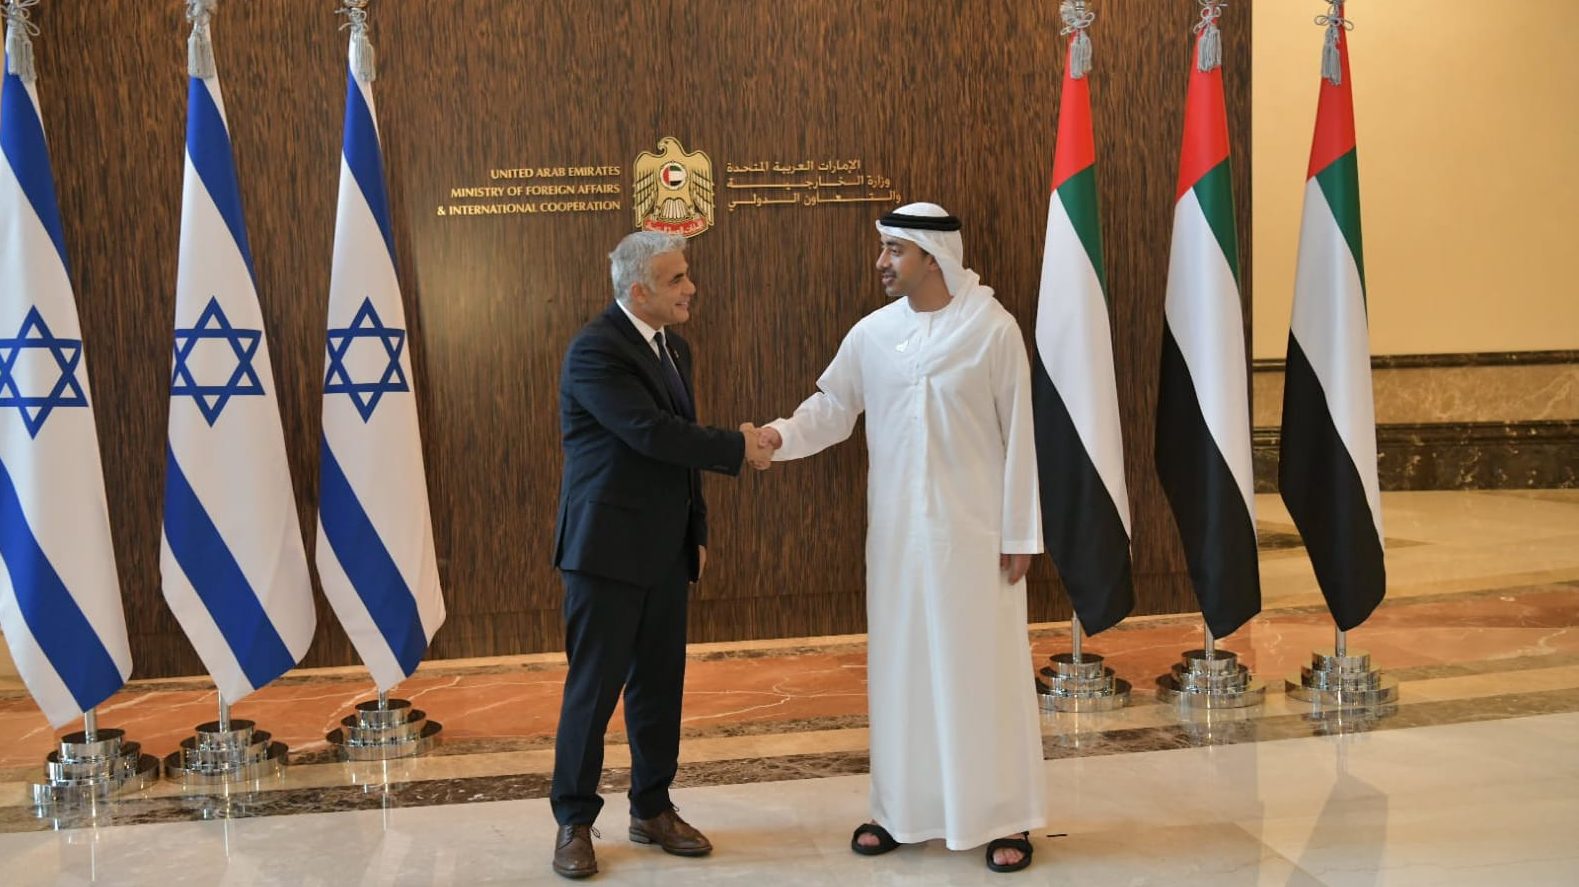 Lapid Lauds ‘Historic Moment’ in UAE Visit